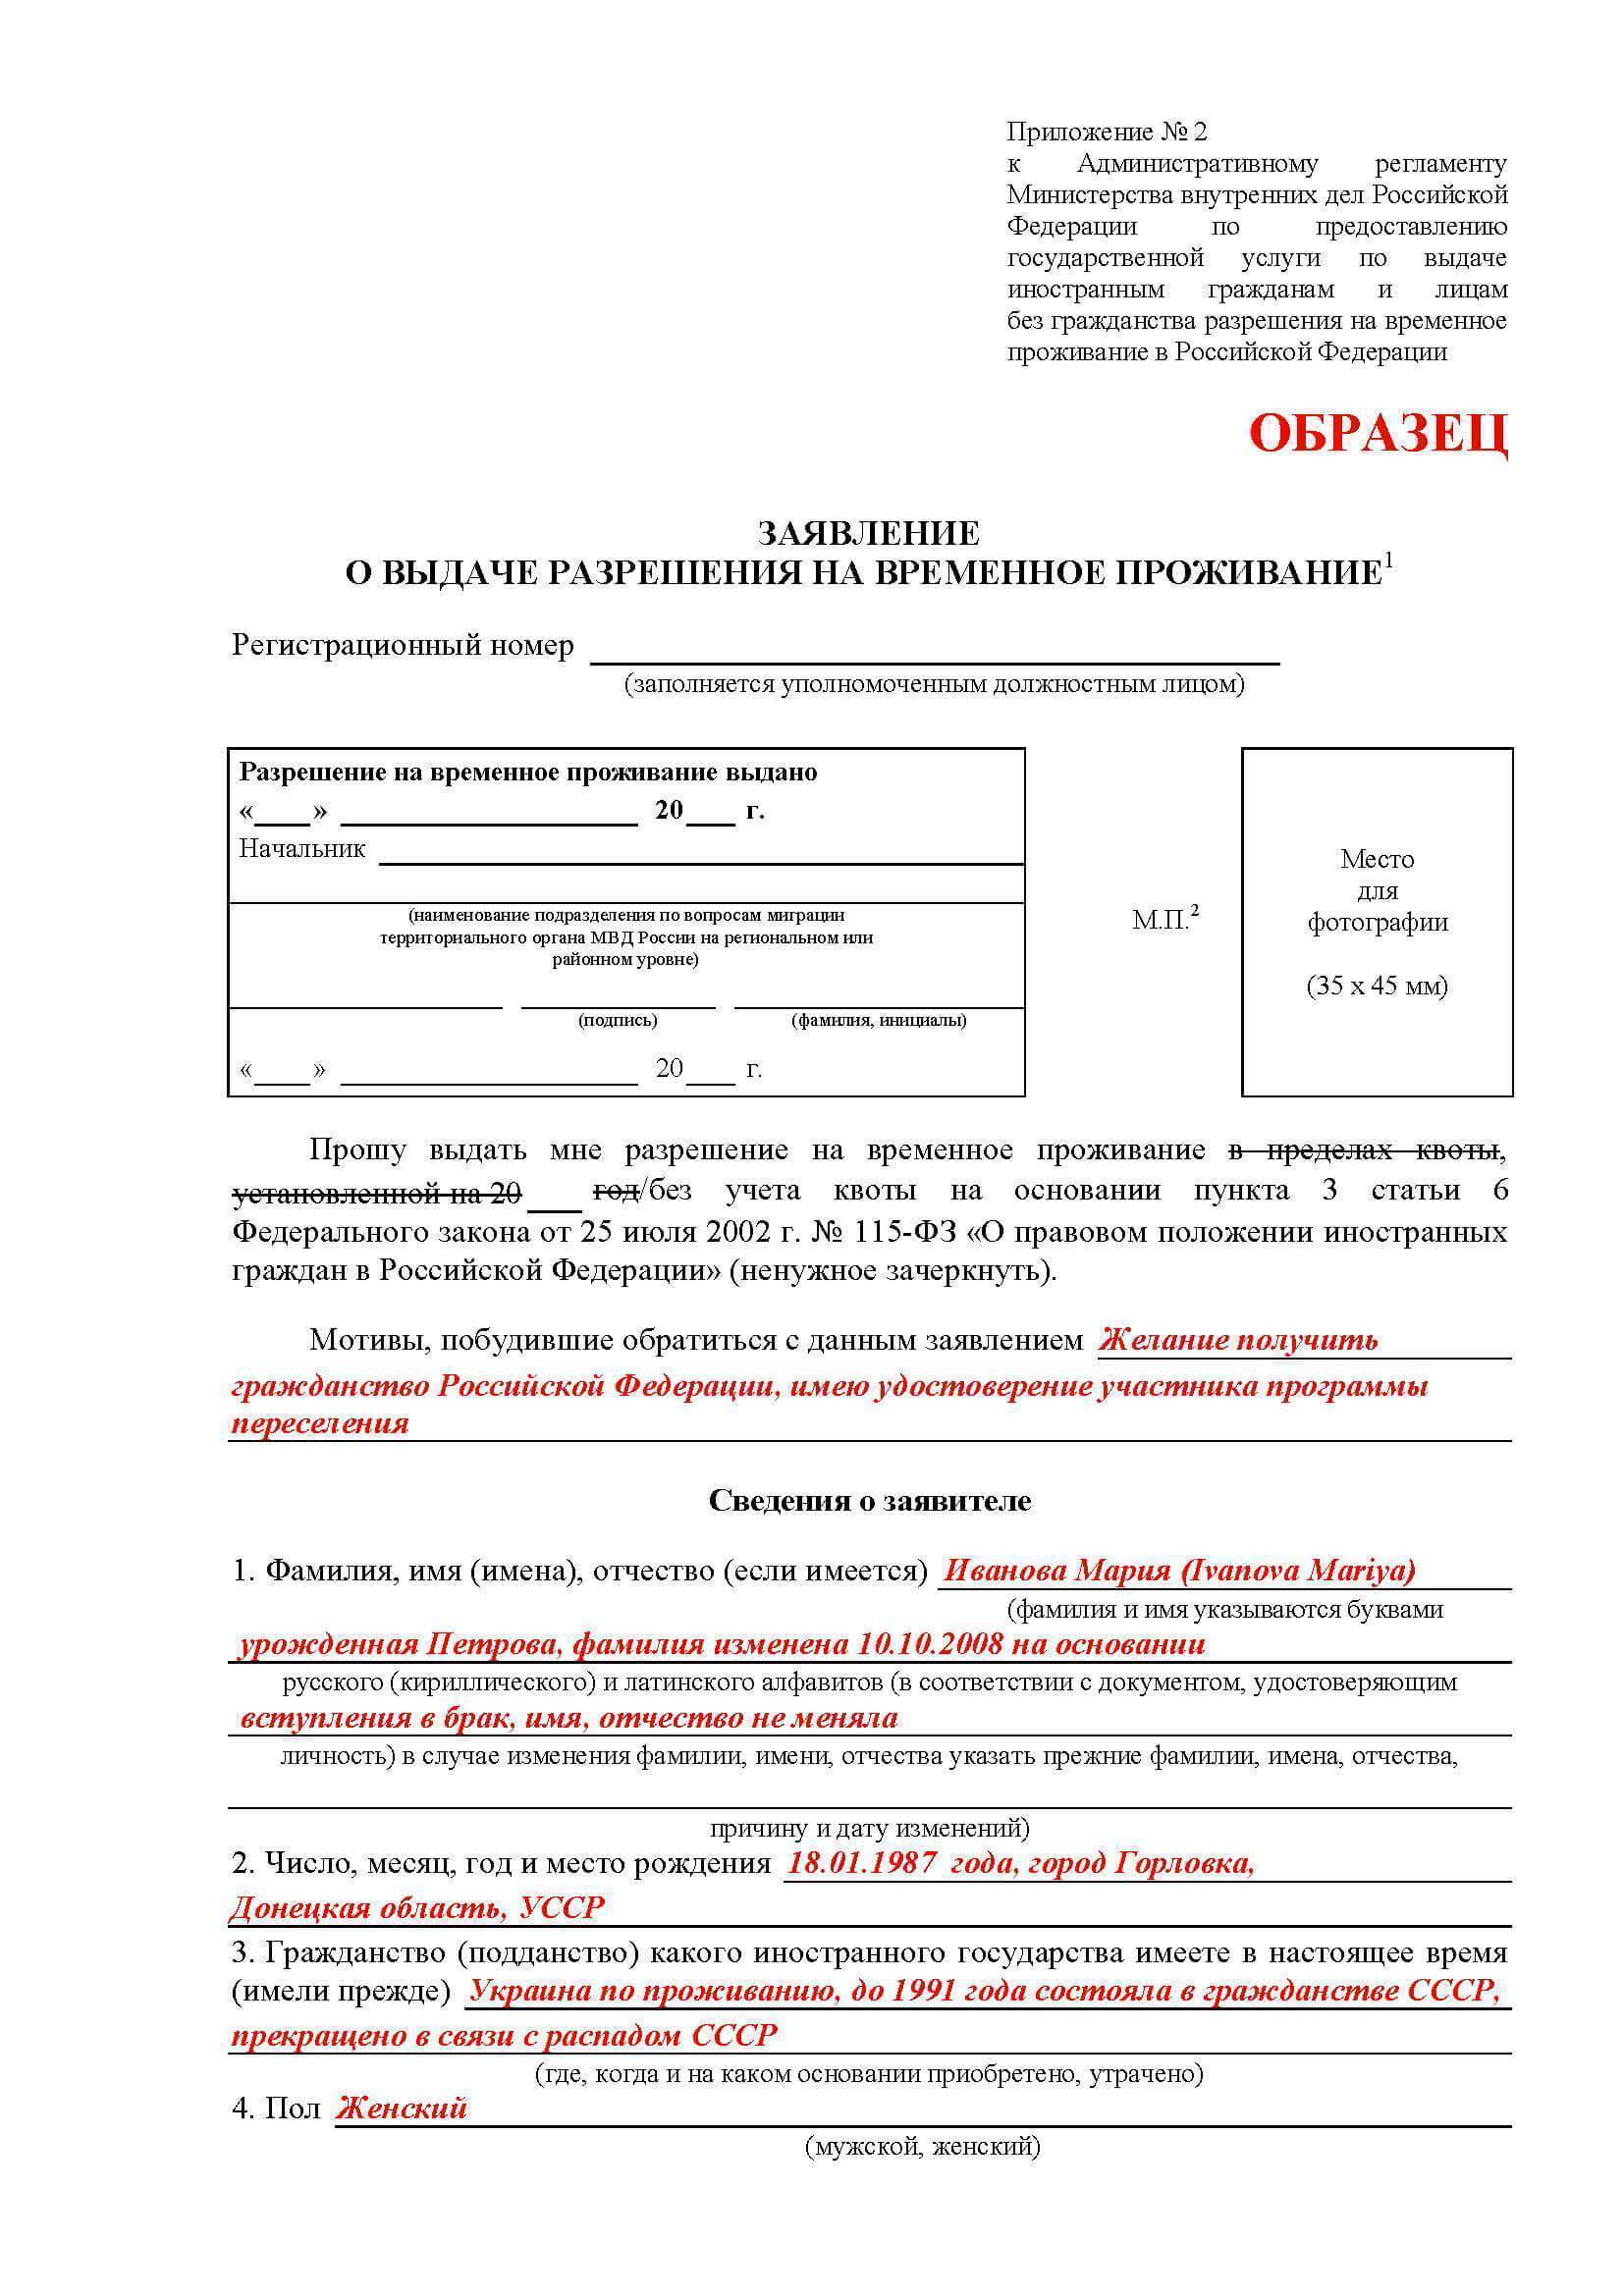 Получение рвп для граждан украины: упрощенный порядок, стоимость, документы, квота